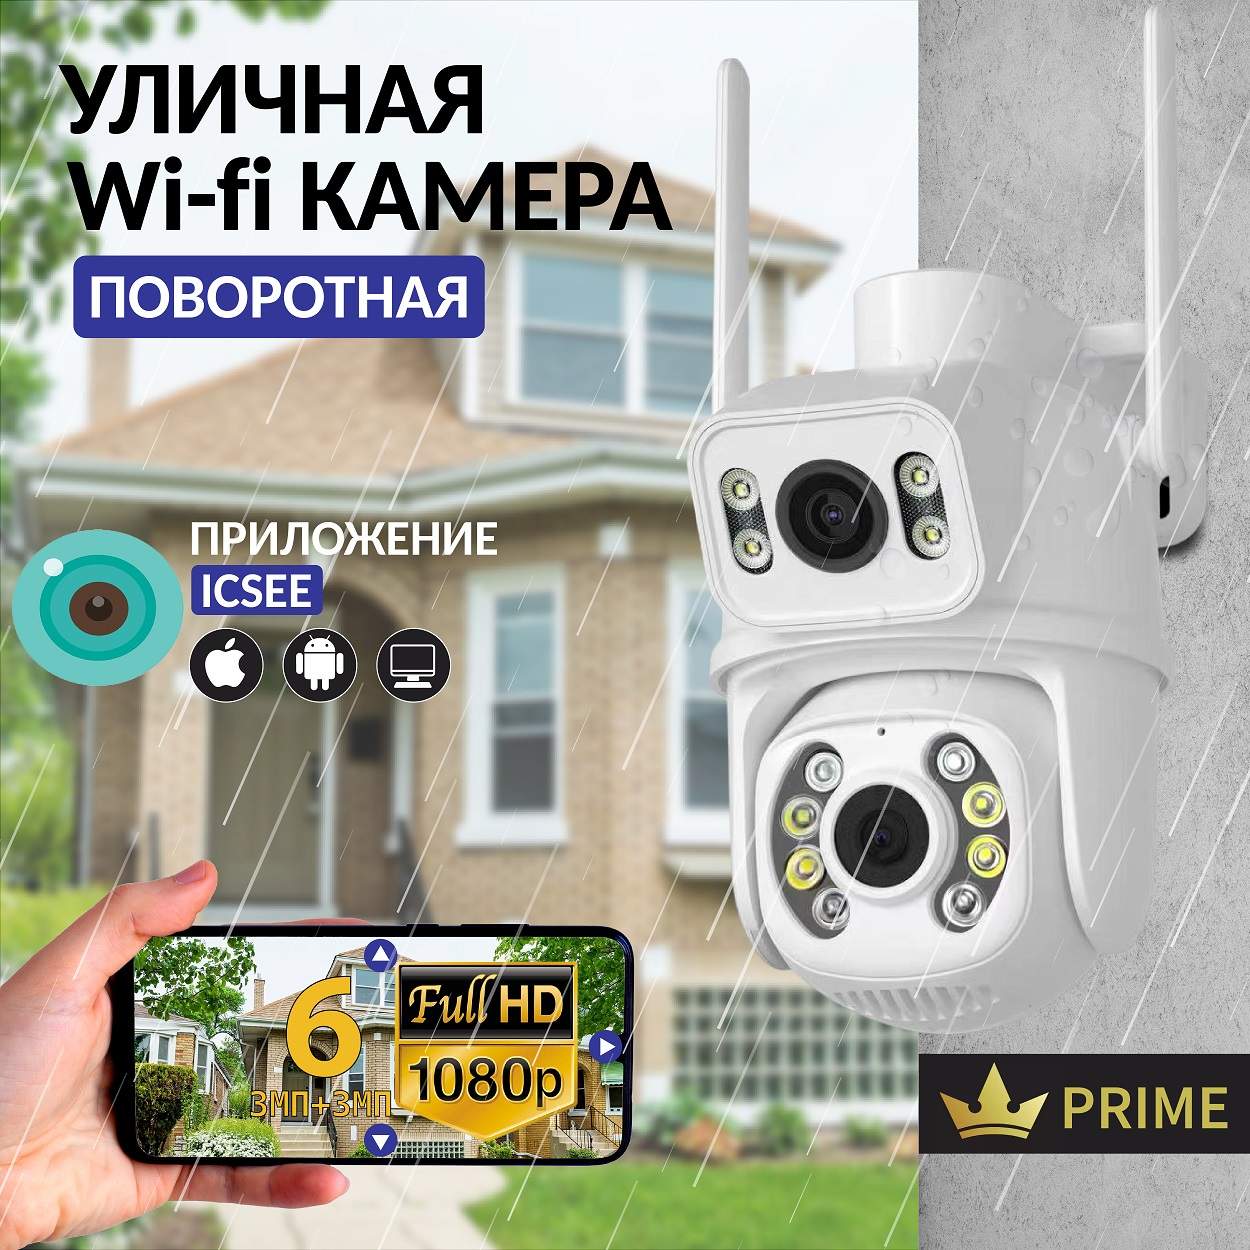 Камера видеонаблюдения Wifi уличная поворотная wifi 6 мп (3Мп + 3Мп)